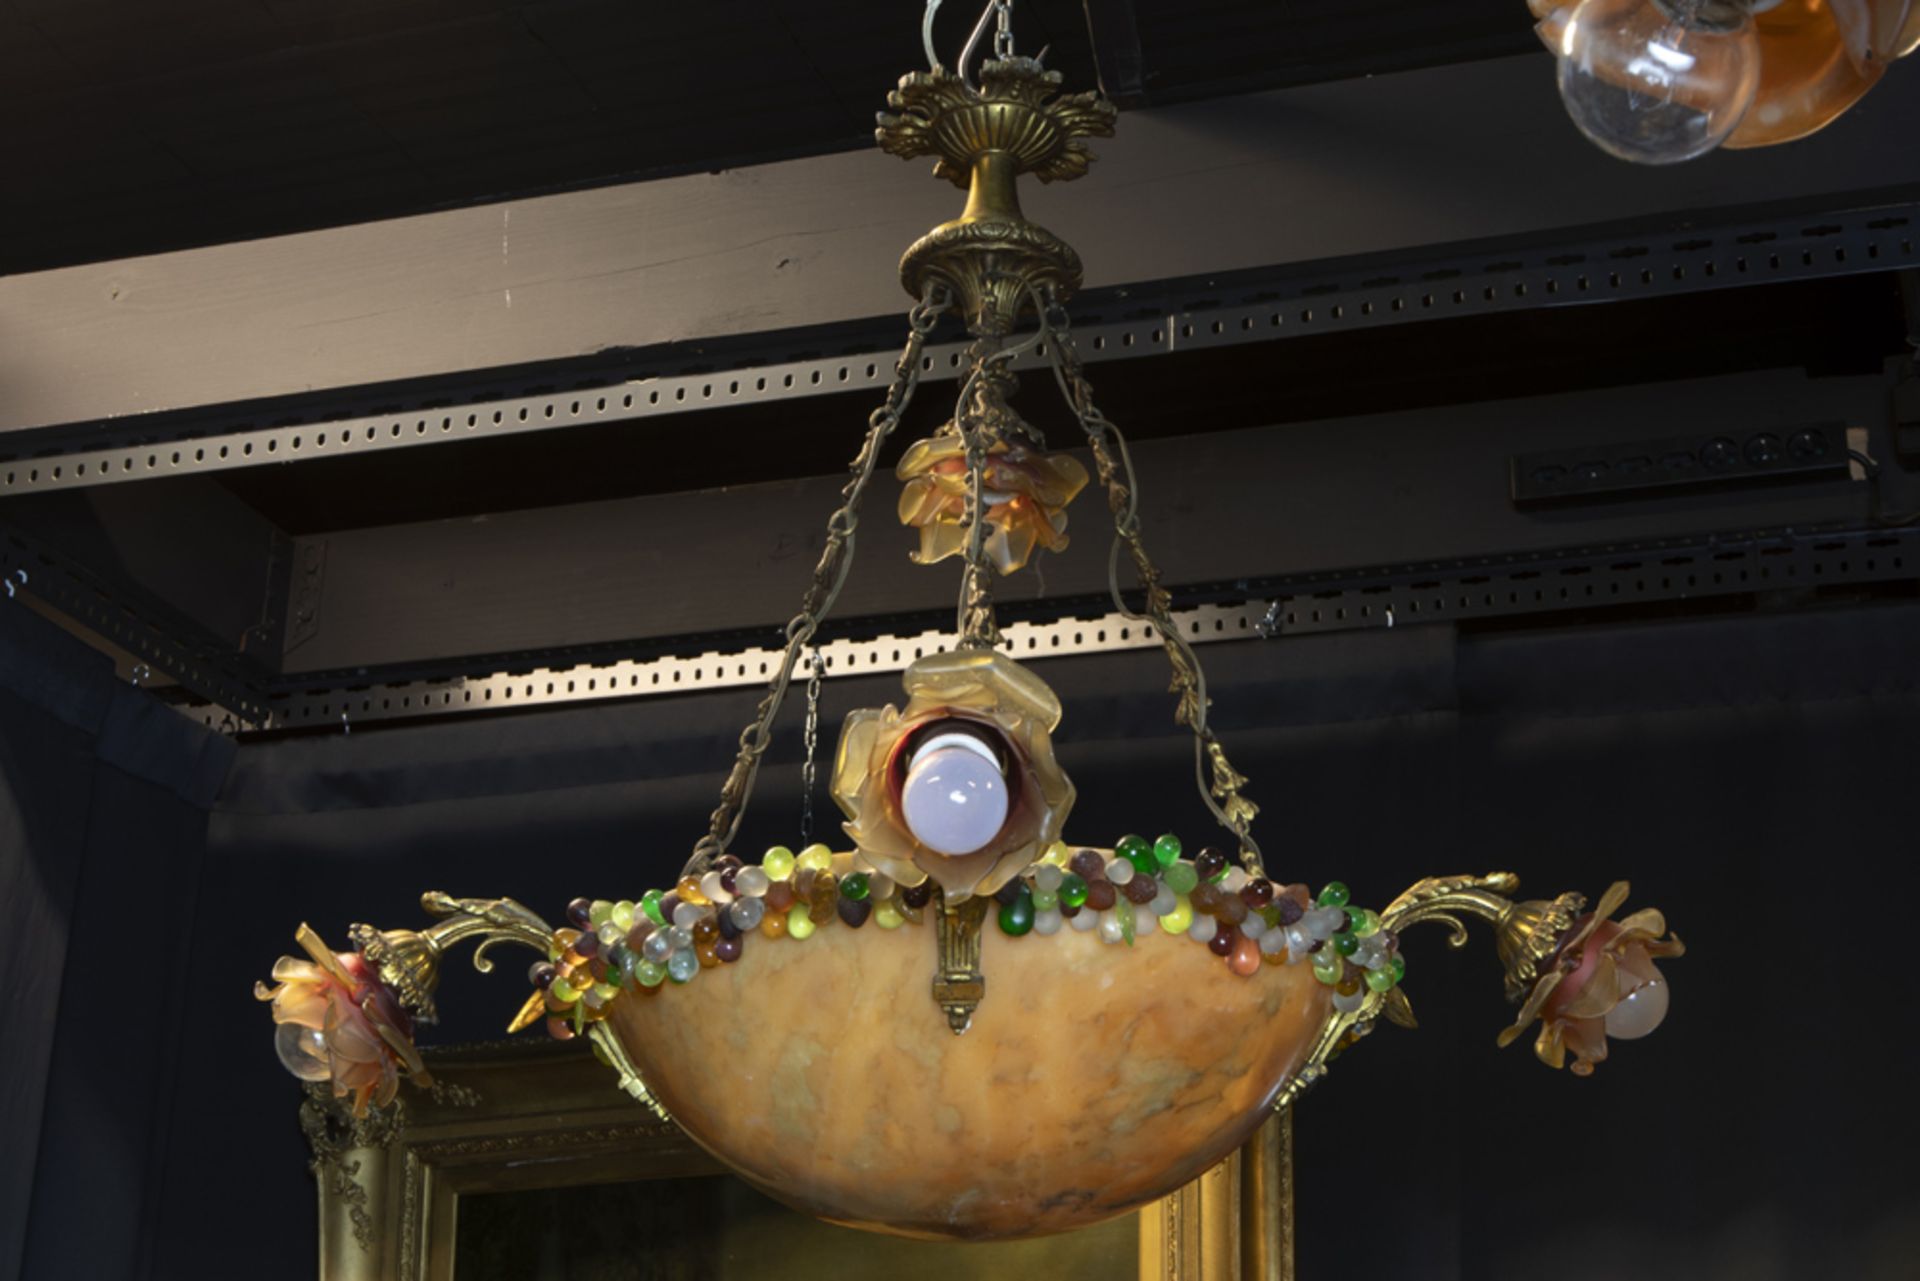 pair of 1920's chandeliers with a bowl in alabaster || Twee lusters van de jaren 1920 met coupe in - Image 3 of 3